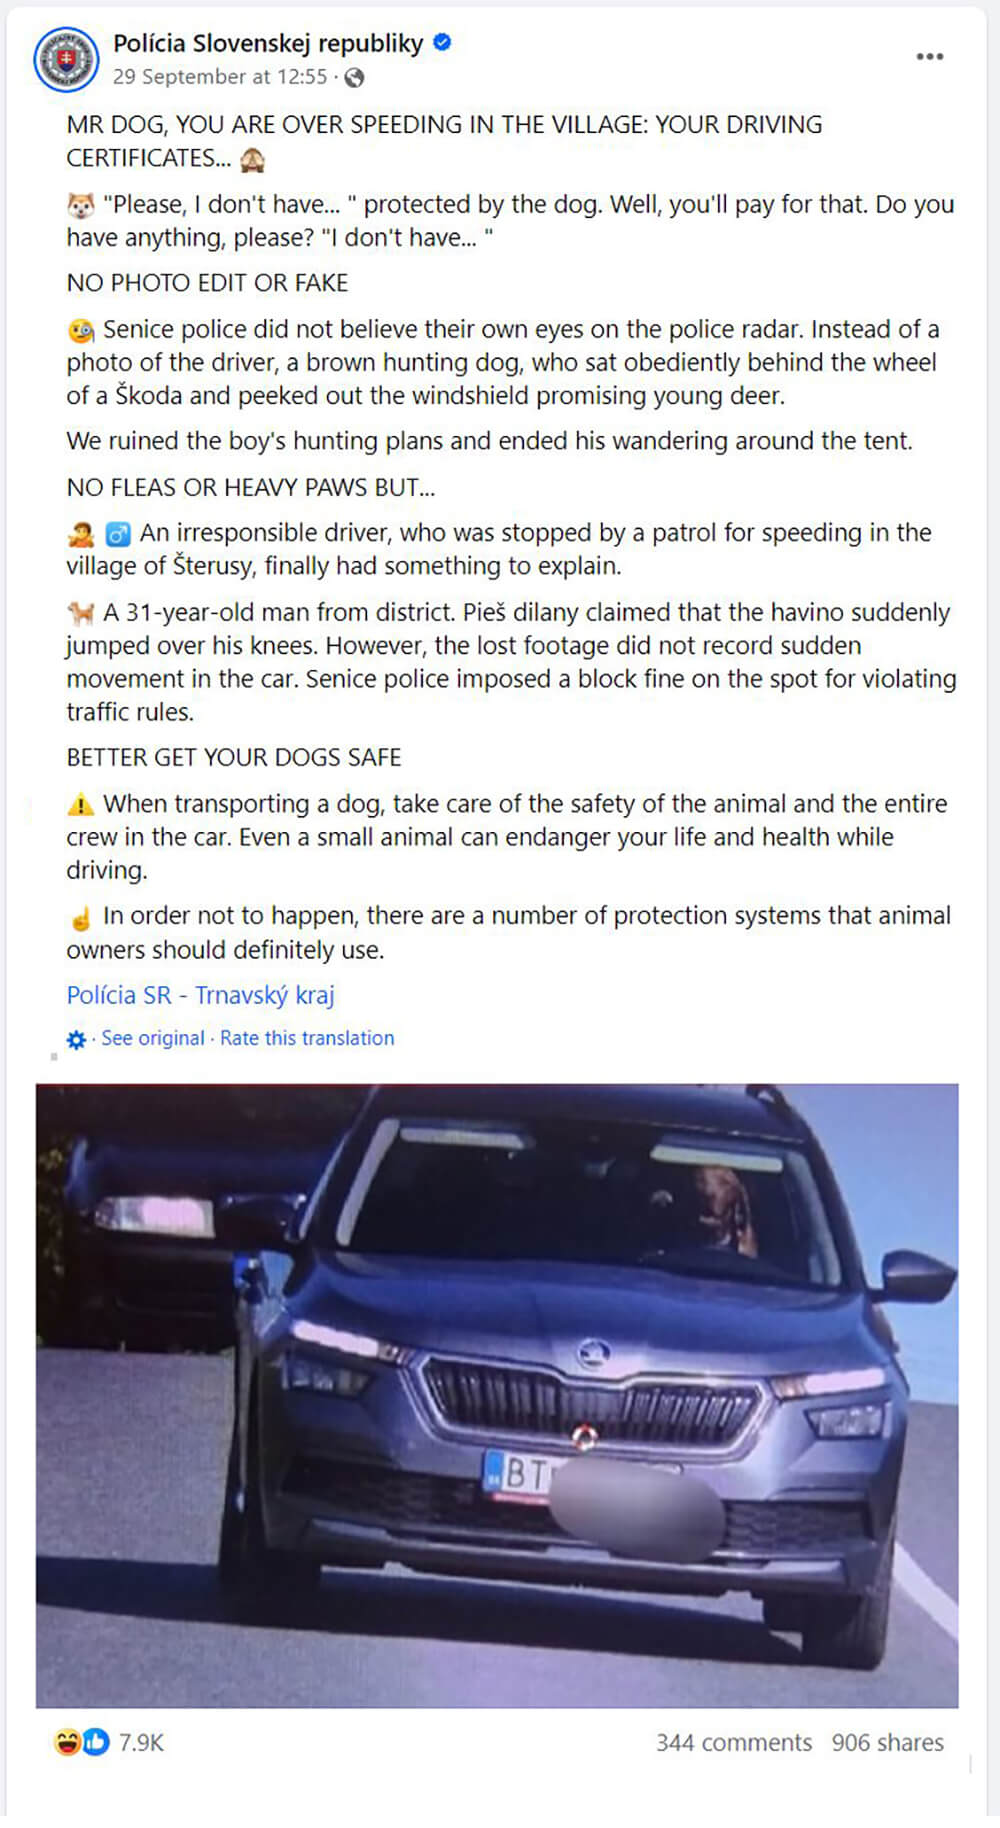 Ανάρτηση στο Facebook με φωτογραφία αυτοκινήτου με σκύλο στη θέση του οδηγού